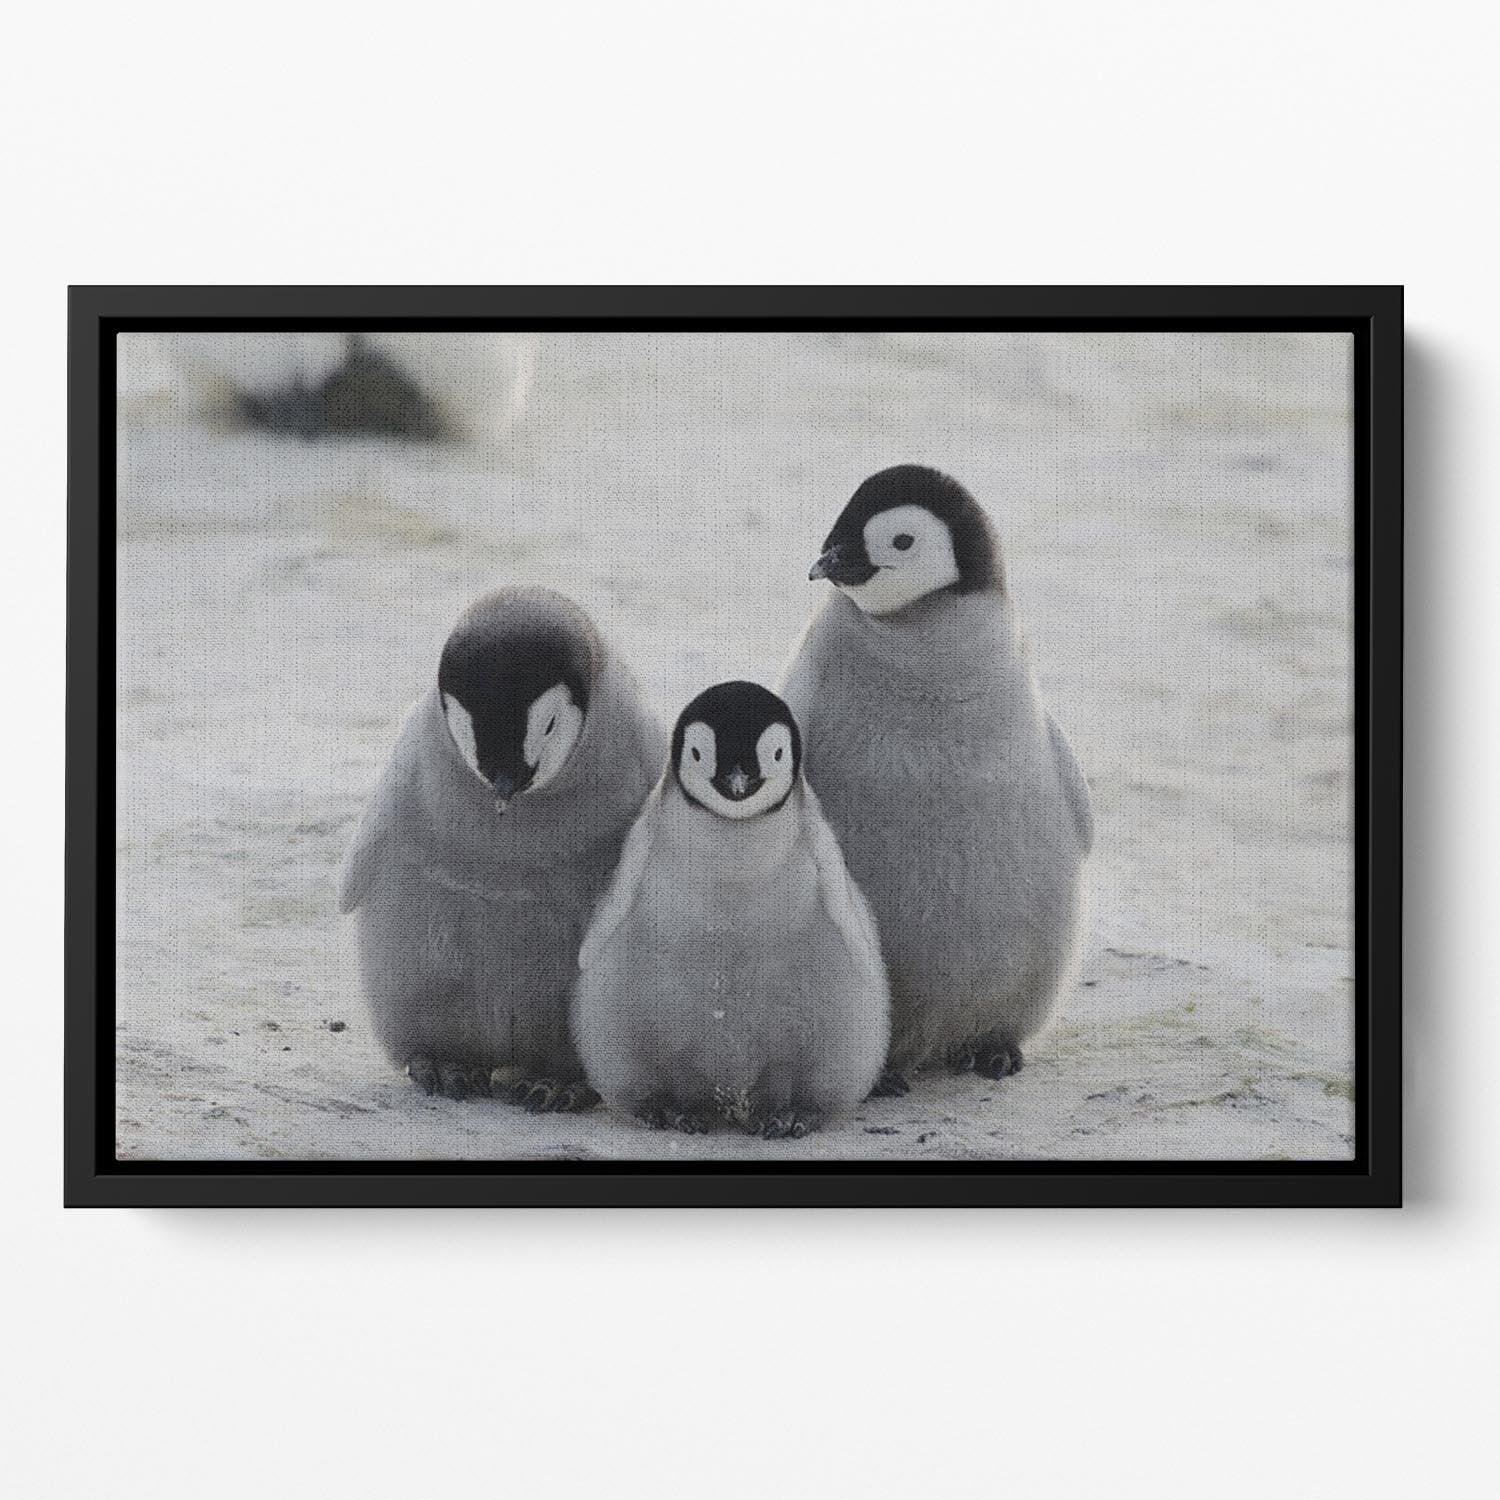 Three Emperor Penguin Chicks Together Floating Framed Canvas - Canvas Art Rocks - 2